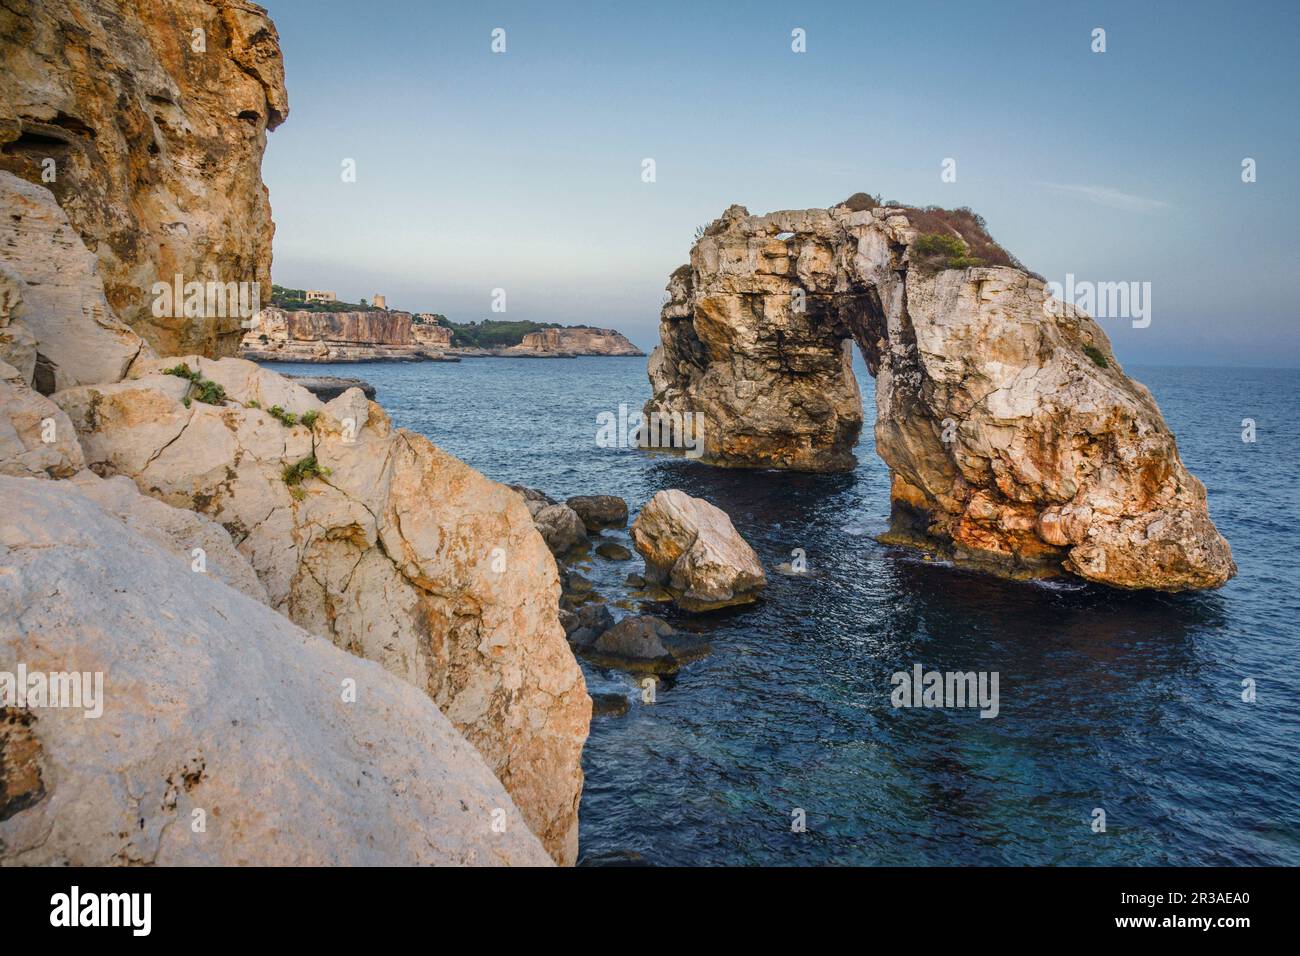 arco natural de roca Es Pontas,Santanyí,islas baleares, Spain. Stock Photo